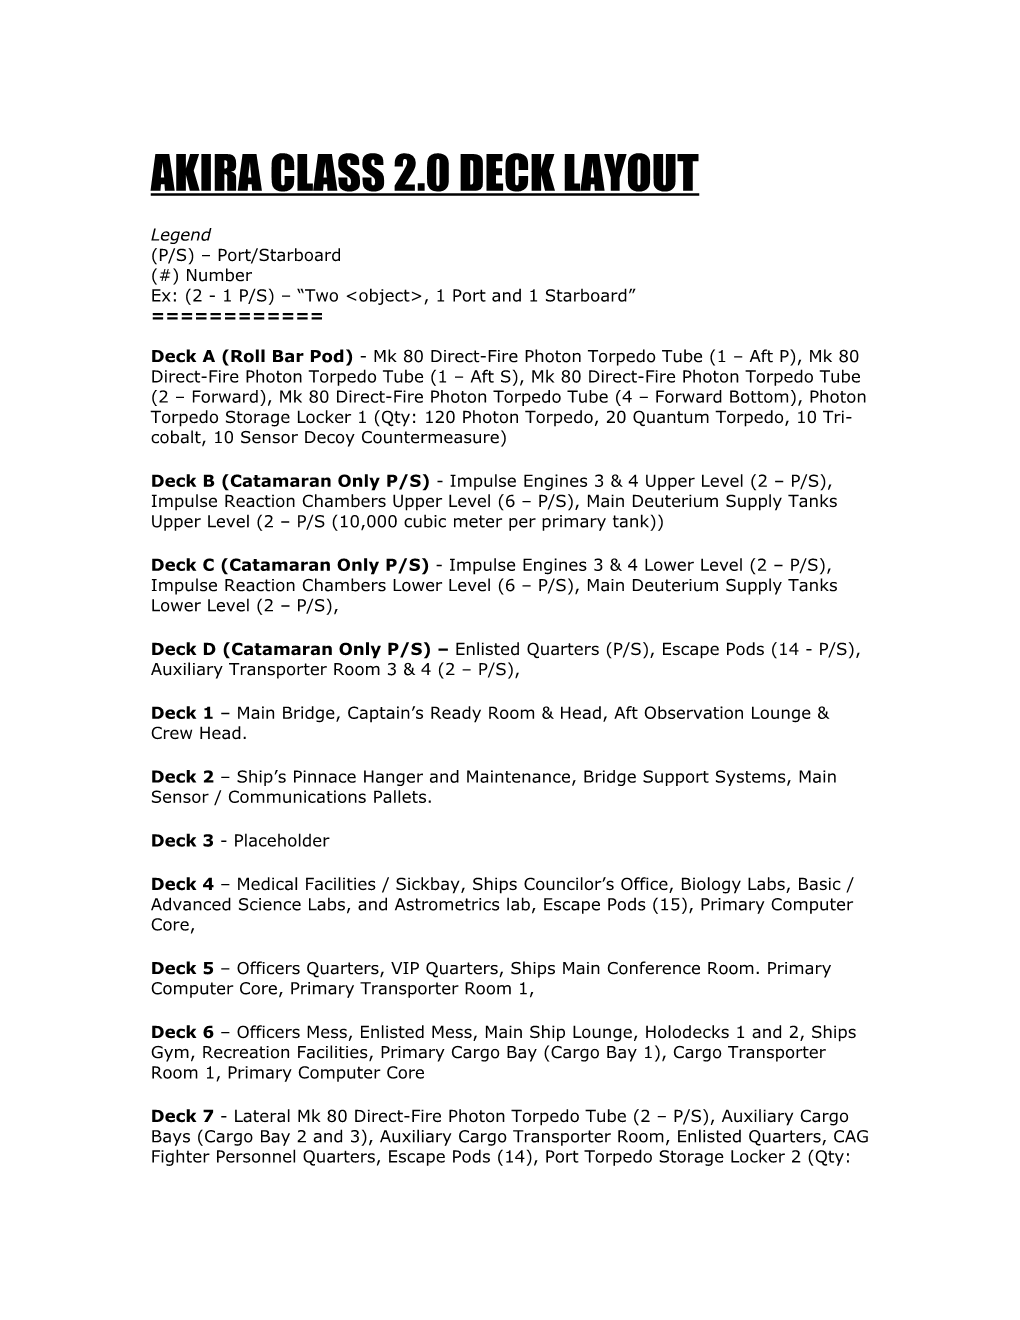 Akira Class 2.0 Deck Layout